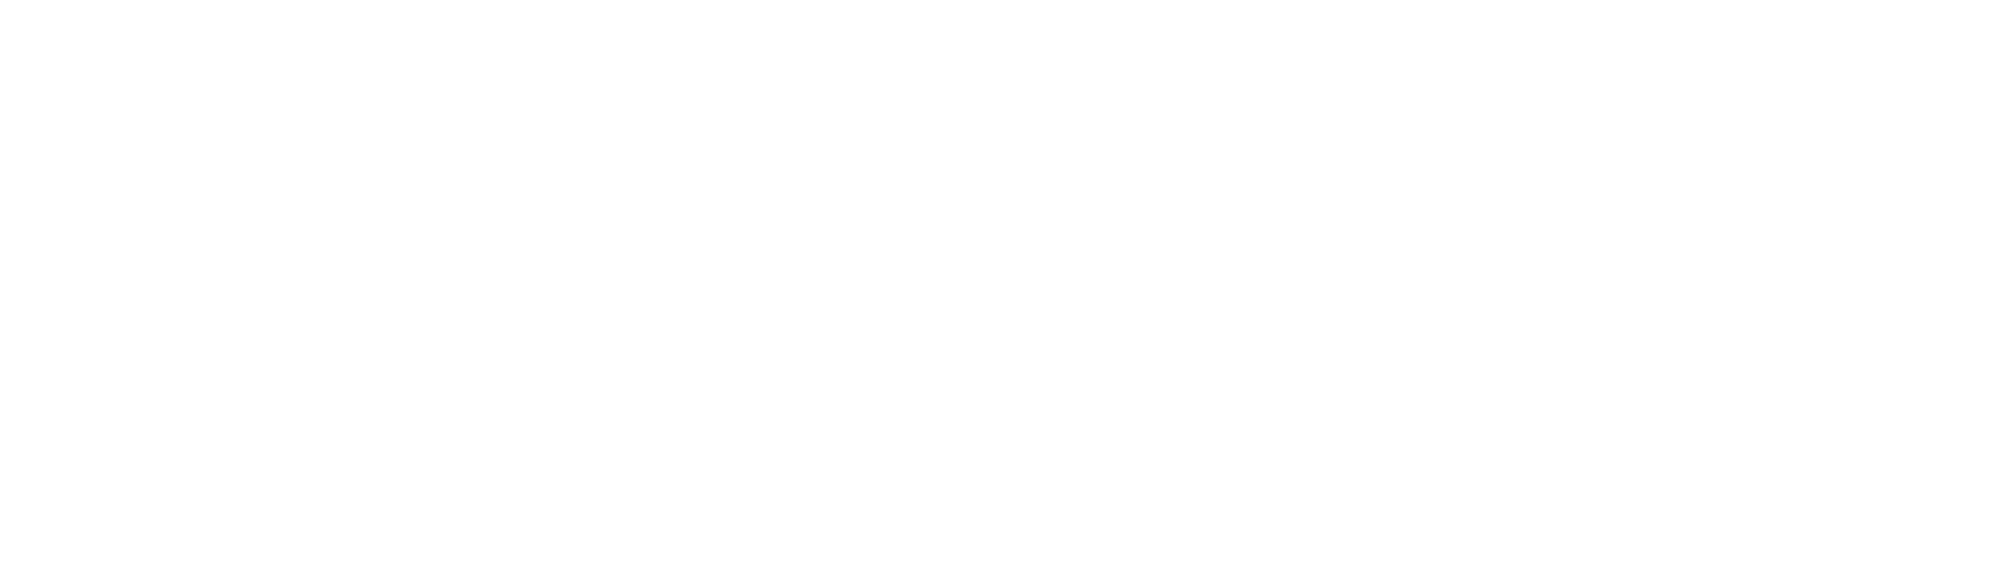 لوگوی دکتر الوردیزاده